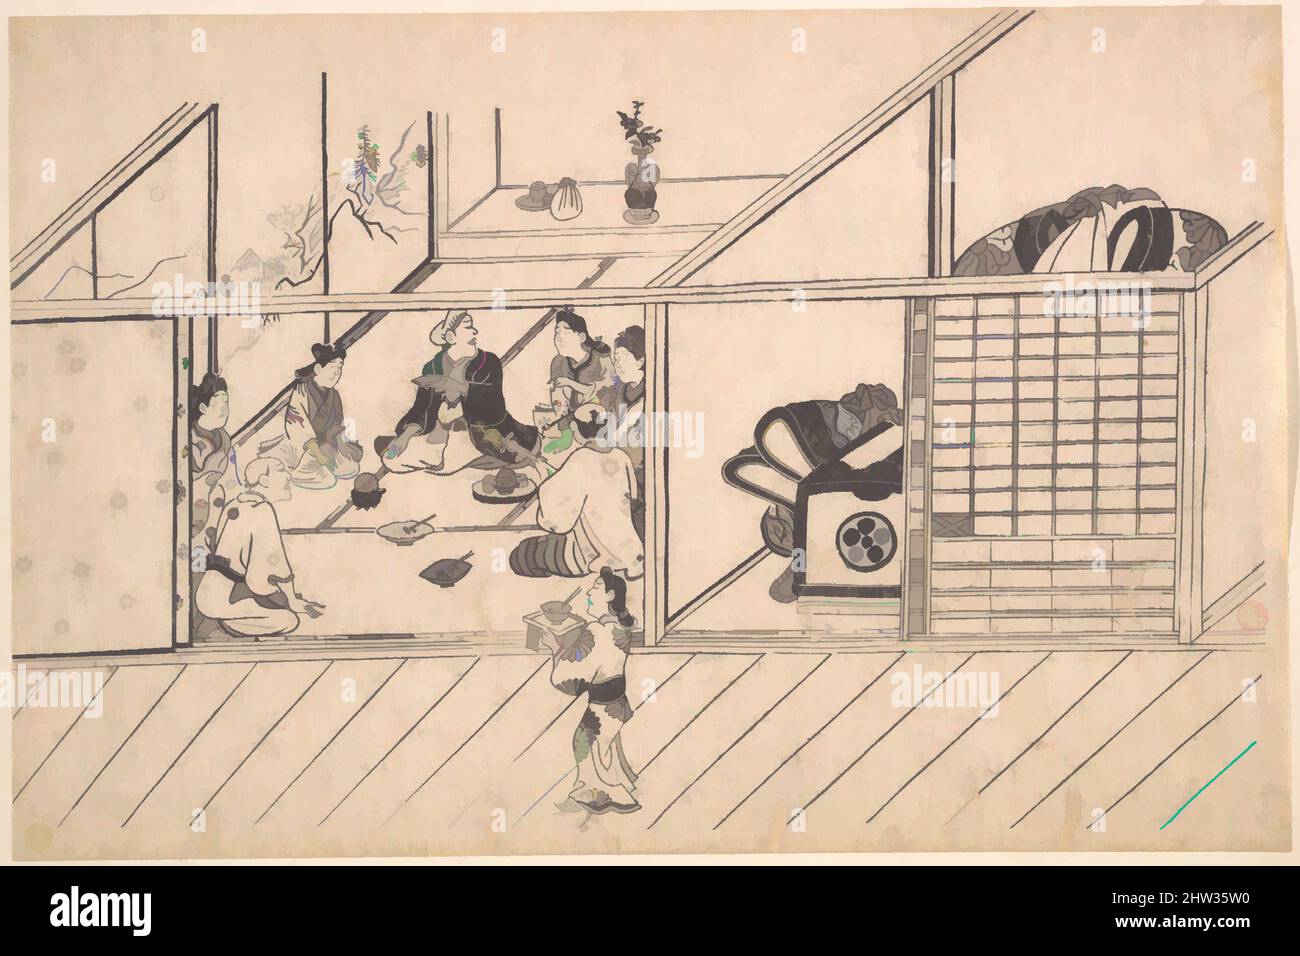 Art inspiré par Un banquet dans un Joroya, période Edo (1615–1868), env. 1680, Japon, impression monochrome sur bois ; encre et couleur sur papier, 10 1/8 x 15 1/5 cm (25,7 x 38,6 cm), estampes, Hishikawa Moronobu (japonais, mort en 1694), cette fête à une maison de thé est à sa hauteur. La chambre est, les œuvres classiques modernisées par Artotop avec un peu de modernité. Formes, couleur et valeur, impact visuel accrocheur sur l'art émotions par la liberté d'œuvres d'art d'une manière contemporaine. Un message intemporel qui cherche une nouvelle direction créative. Artistes qui se tournent vers le support numérique et créent le NFT Artotop Banque D'Images